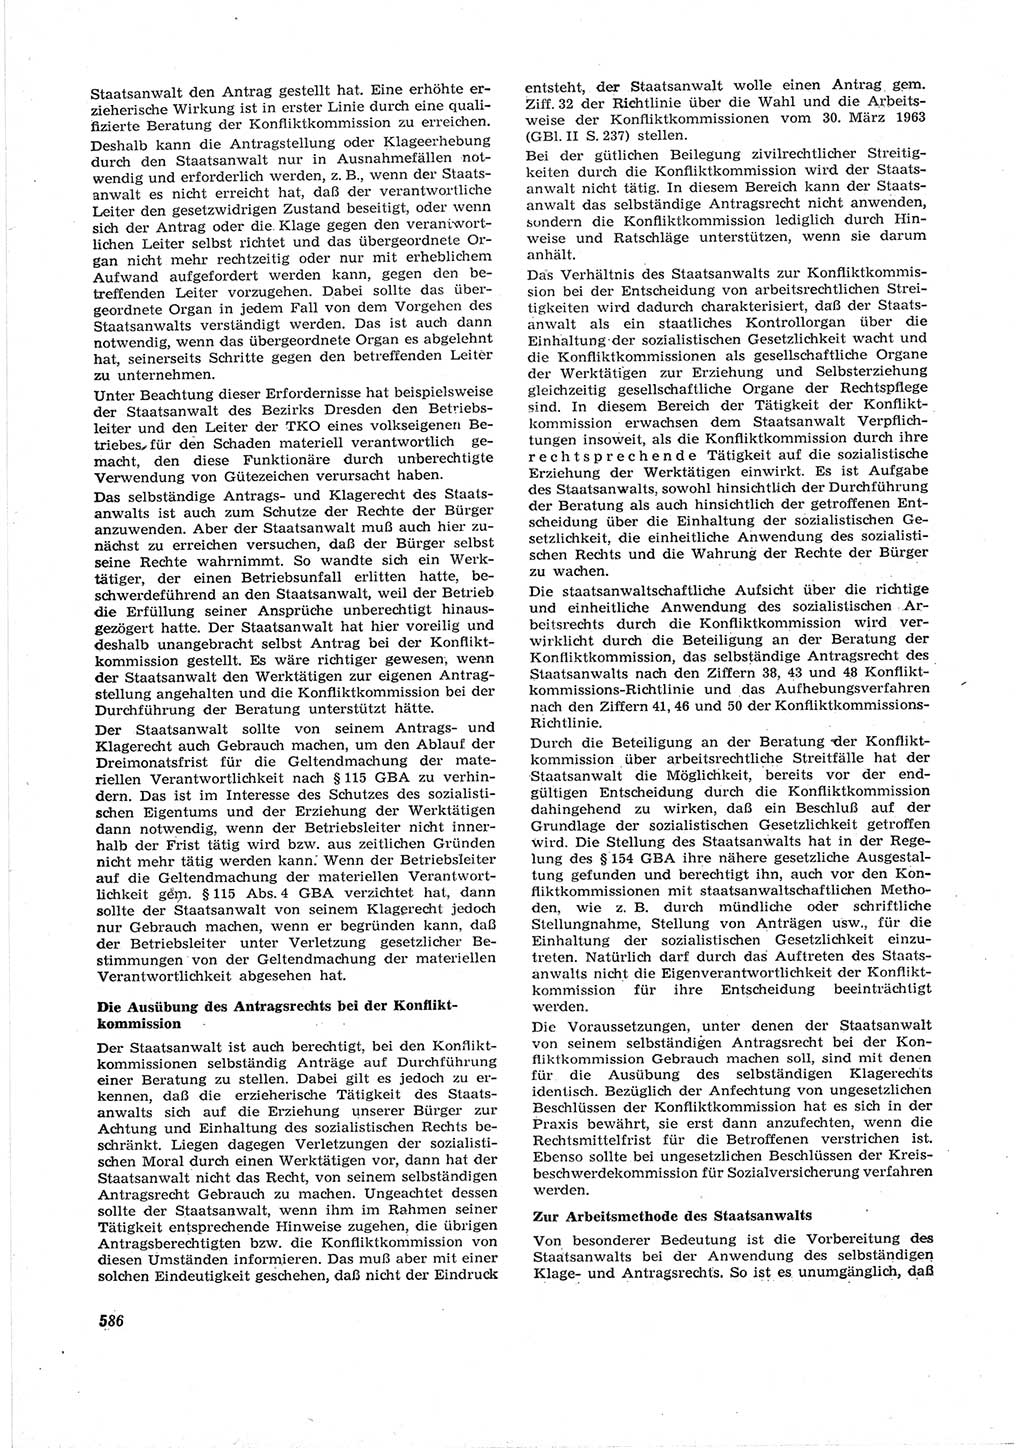 Neue Justiz (NJ), Zeitschrift für Recht und Rechtswissenschaft [Deutsche Demokratische Republik (DDR)], 17. Jahrgang 1963, Seite 586 (NJ DDR 1963, S. 586)